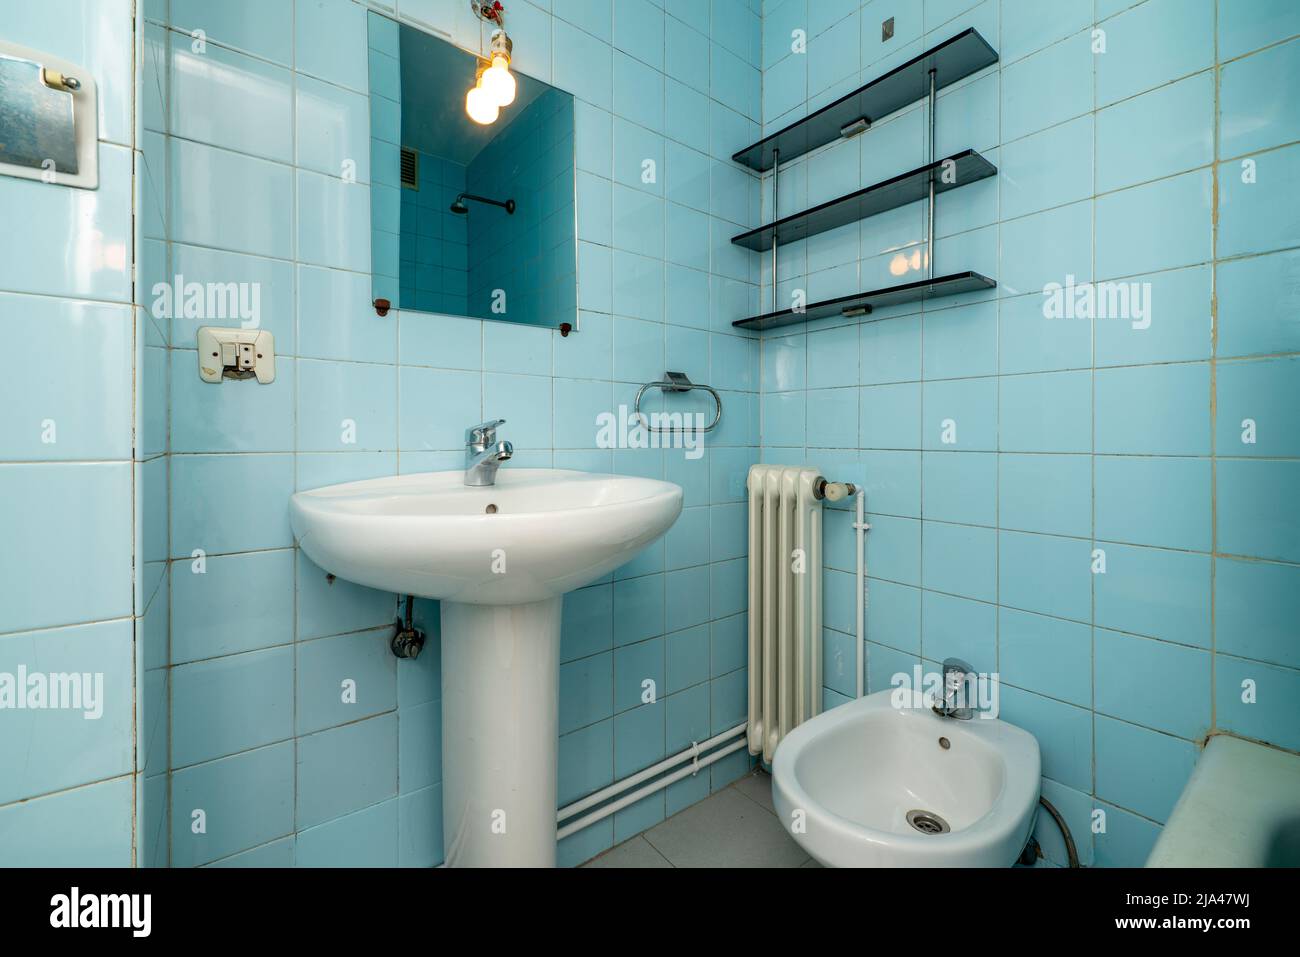 Baño con espejo con balda de cristal lavabo de porcelana con pie del mismo  material radiador pequeño de aluminio blanco y salida a pasillo